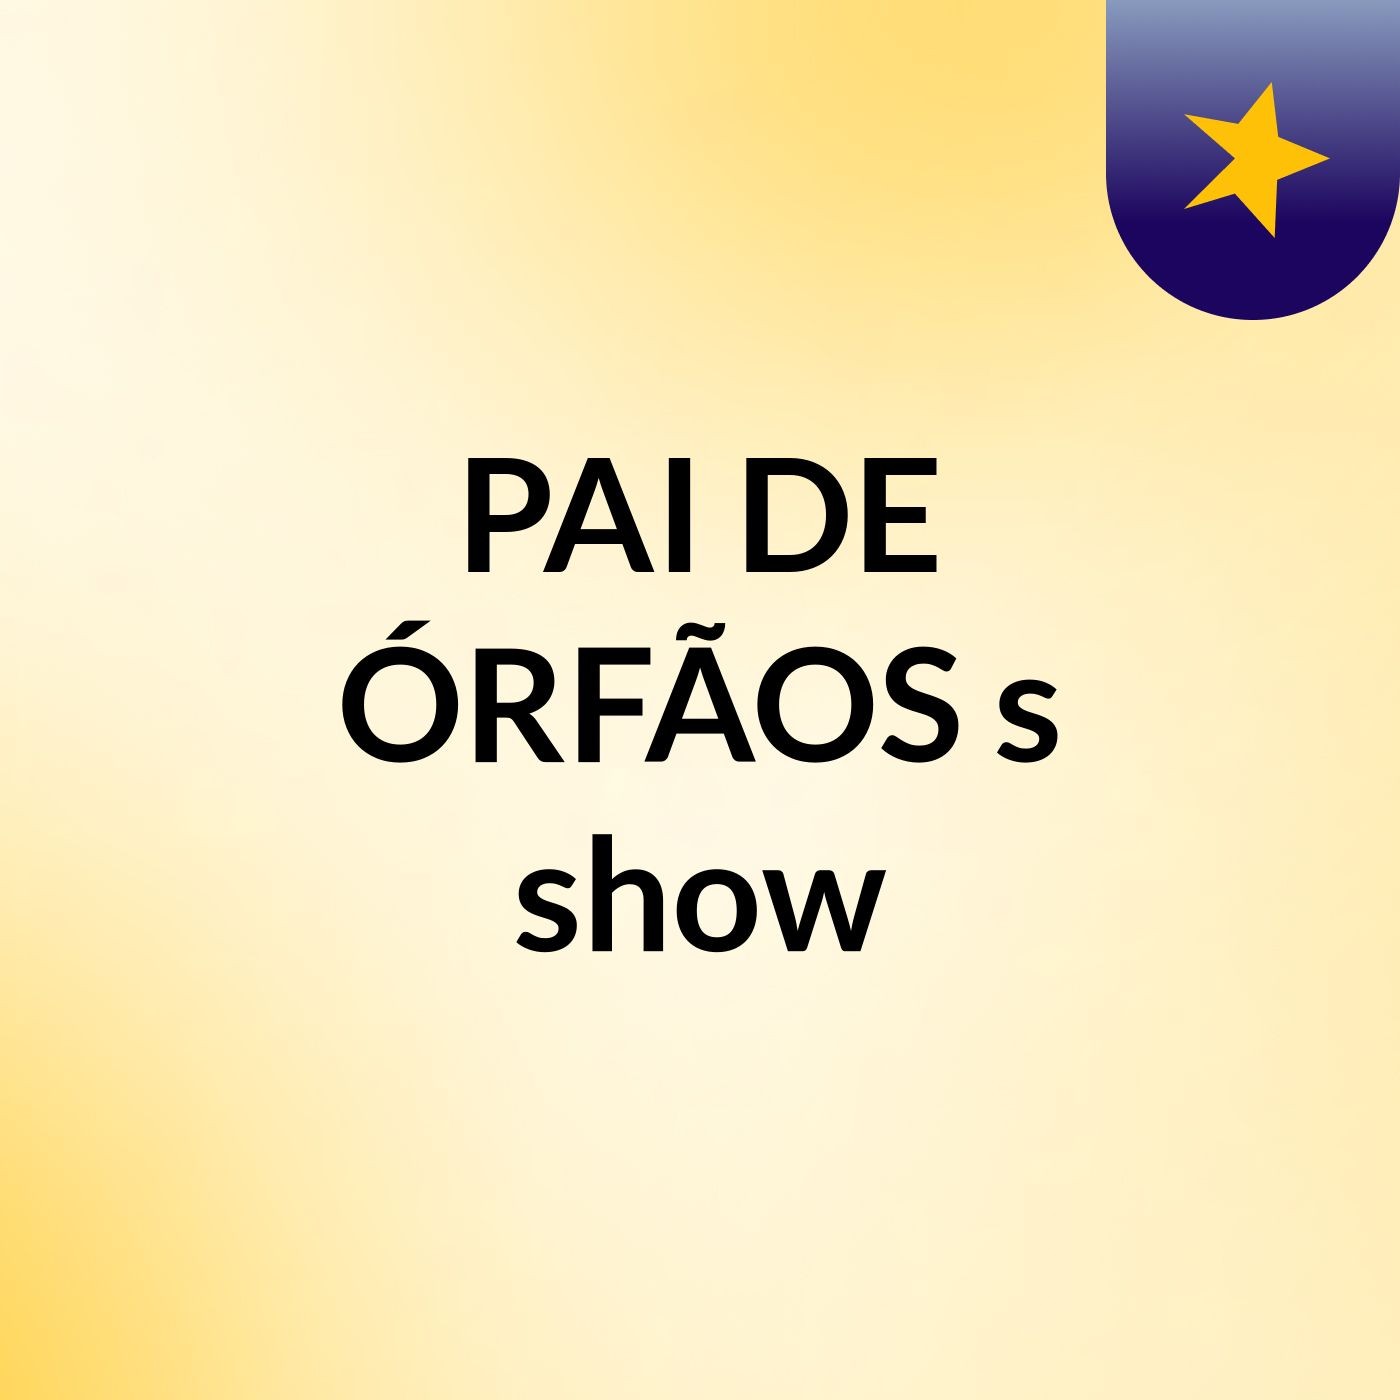 PAI DE ÓRFÃOS's show